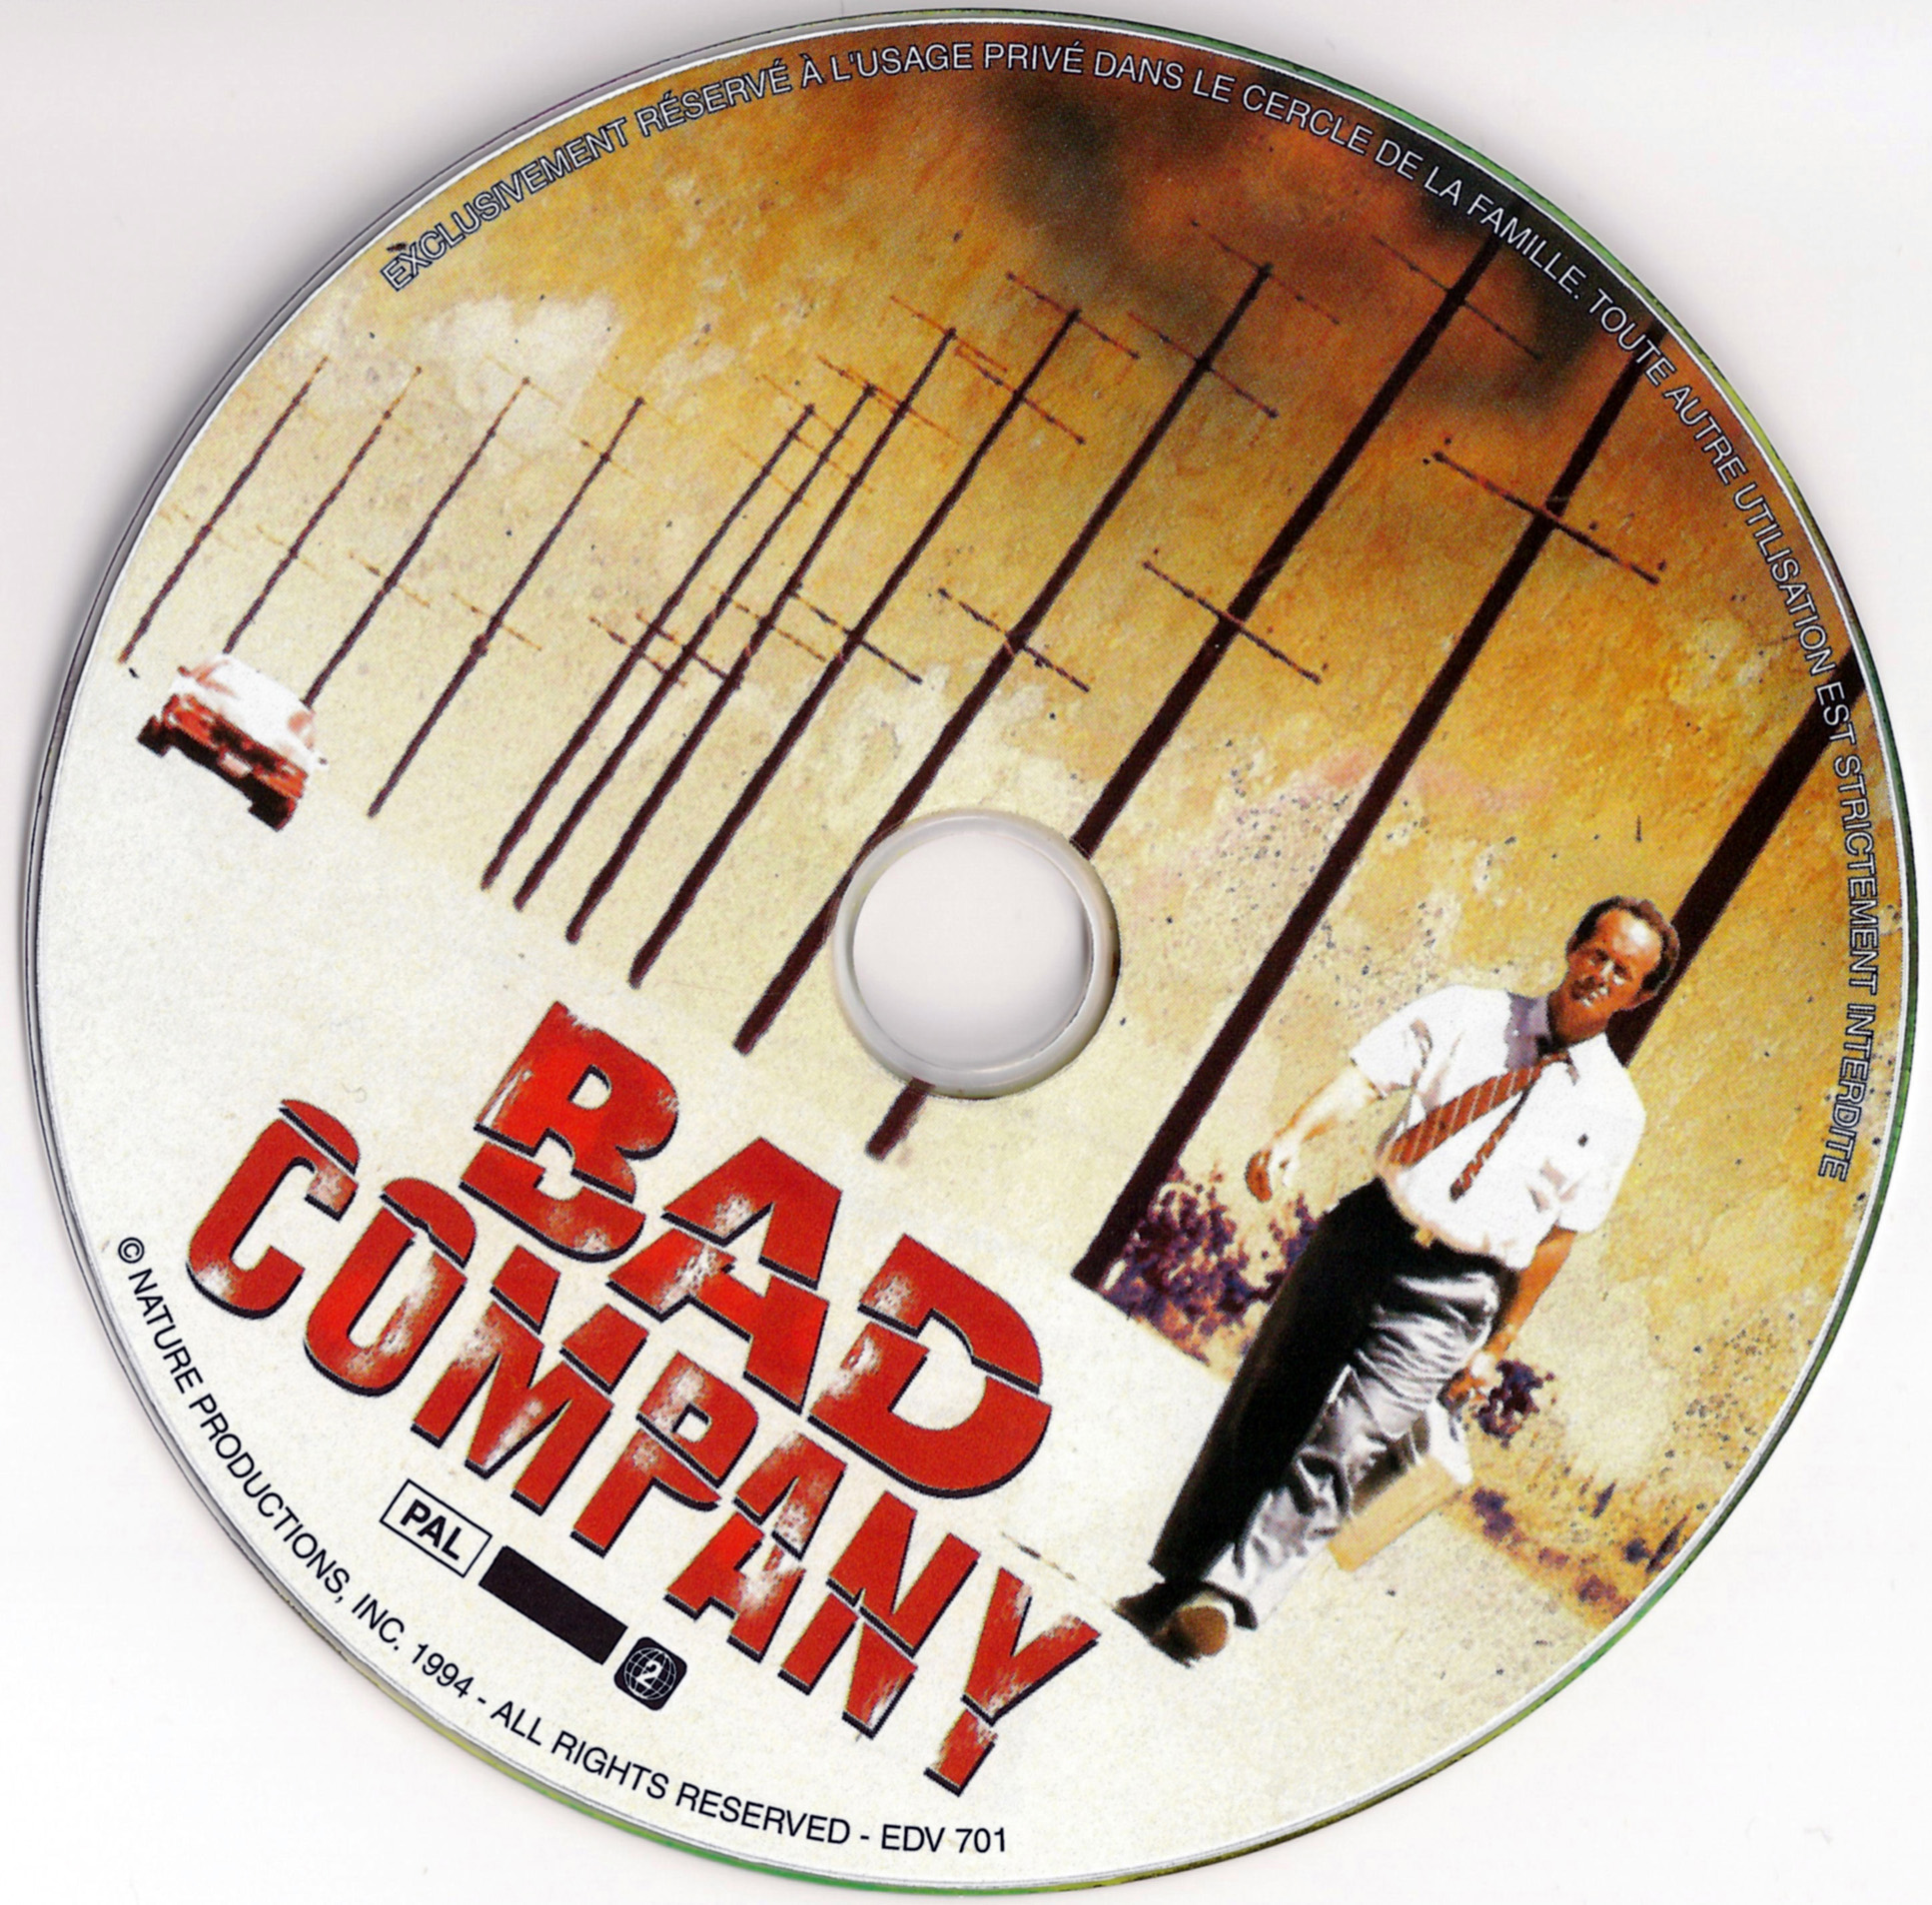 Bad company (1994)